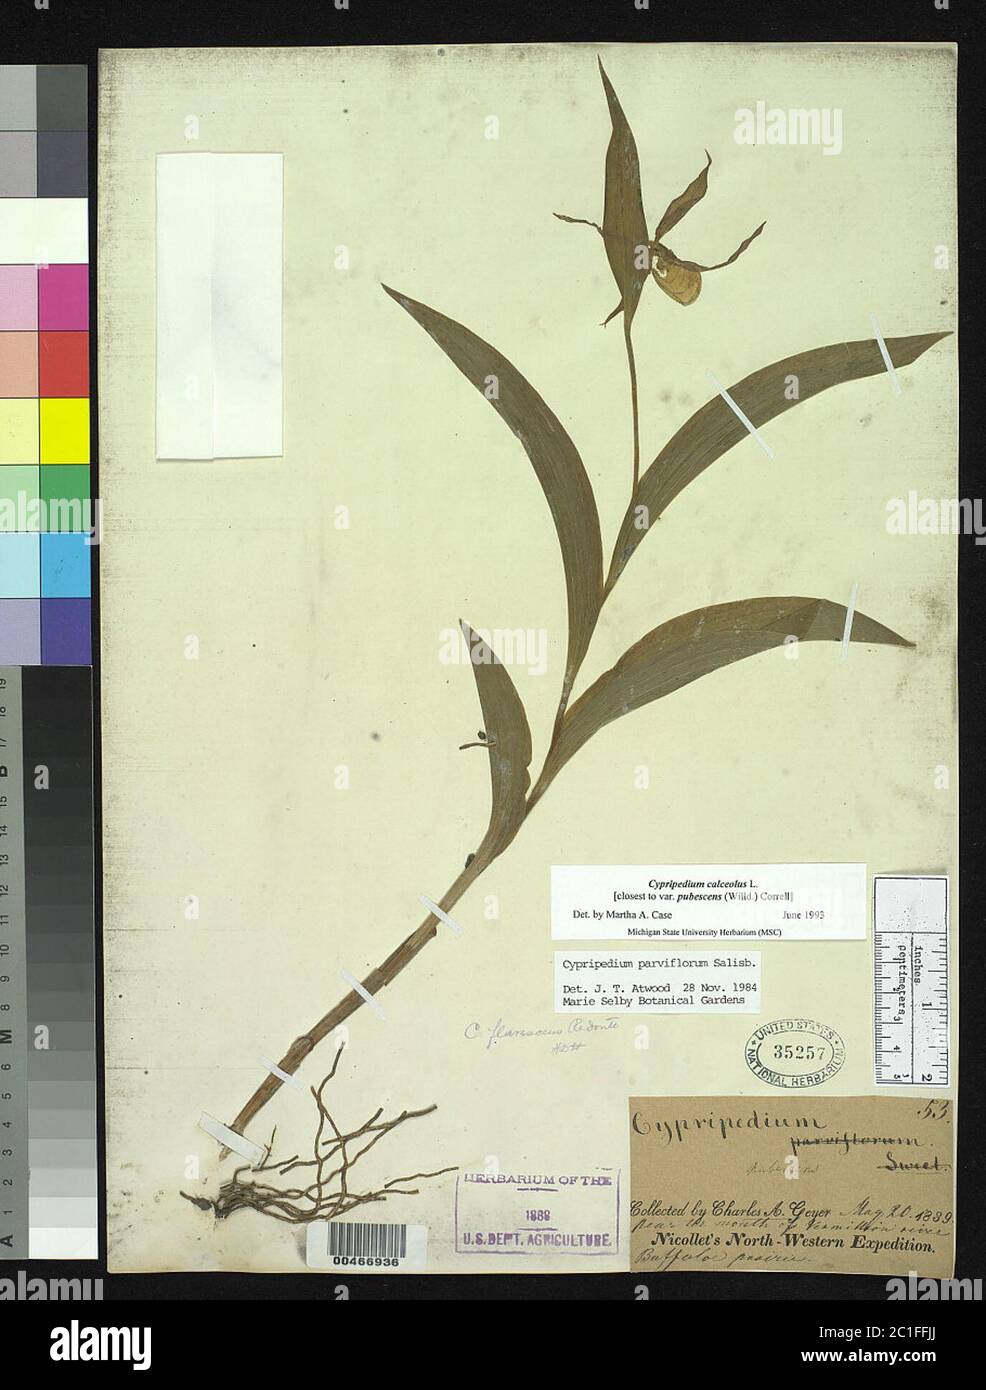 Cypripedium calceolus var pubescens Cypripedium calceolus var pubescens. Stock Photo